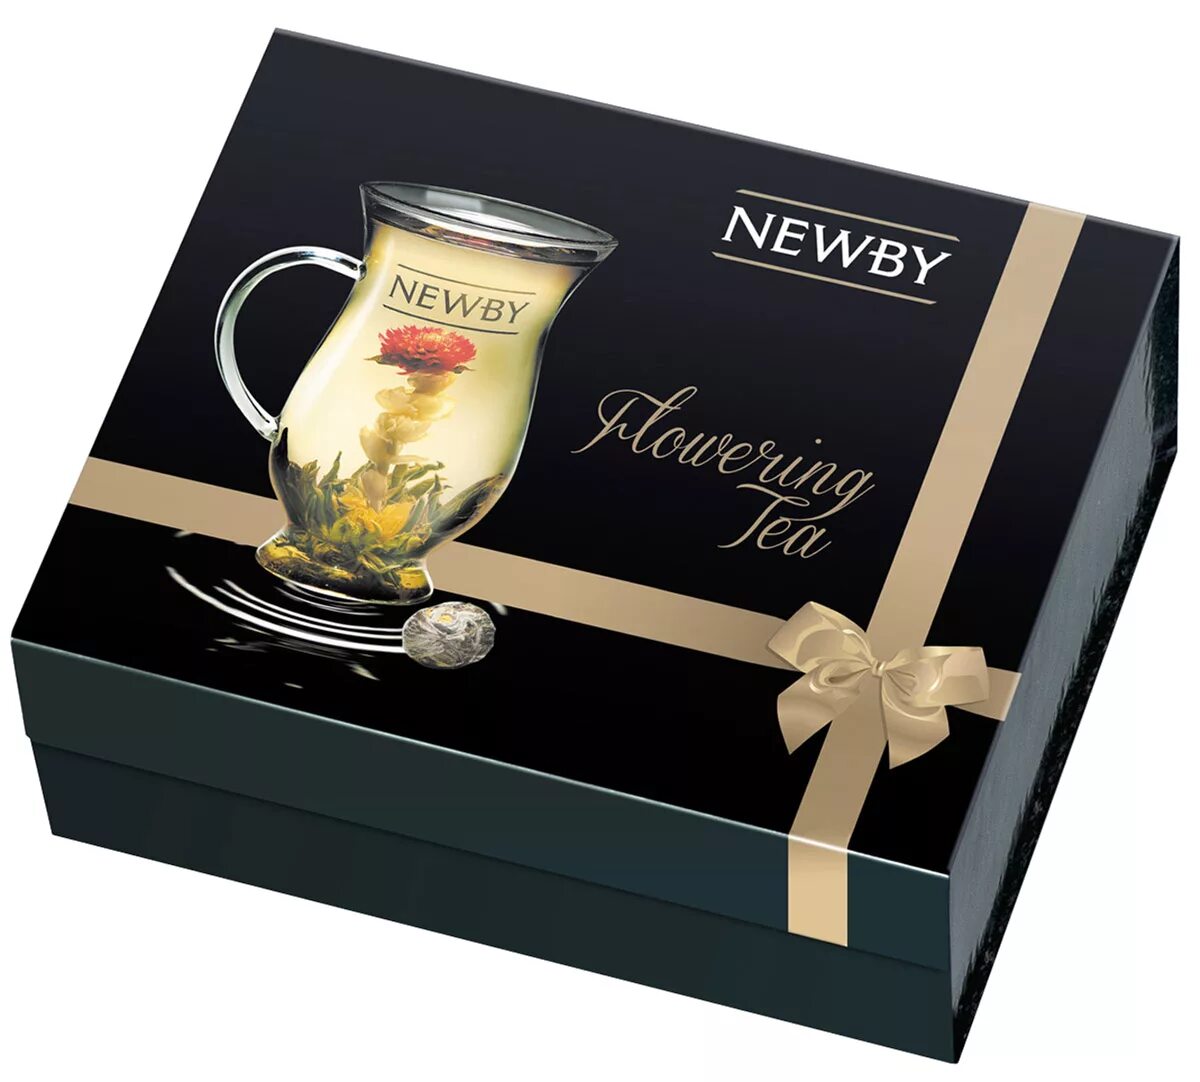 Чай Newby подарочный набор. Чай Newby набор чайный. Чай черный Newby Black Teas ассорти подарочный набор. Чай черный Newby Crown ассорти подарочный набор. Где купить чай в пакетиках